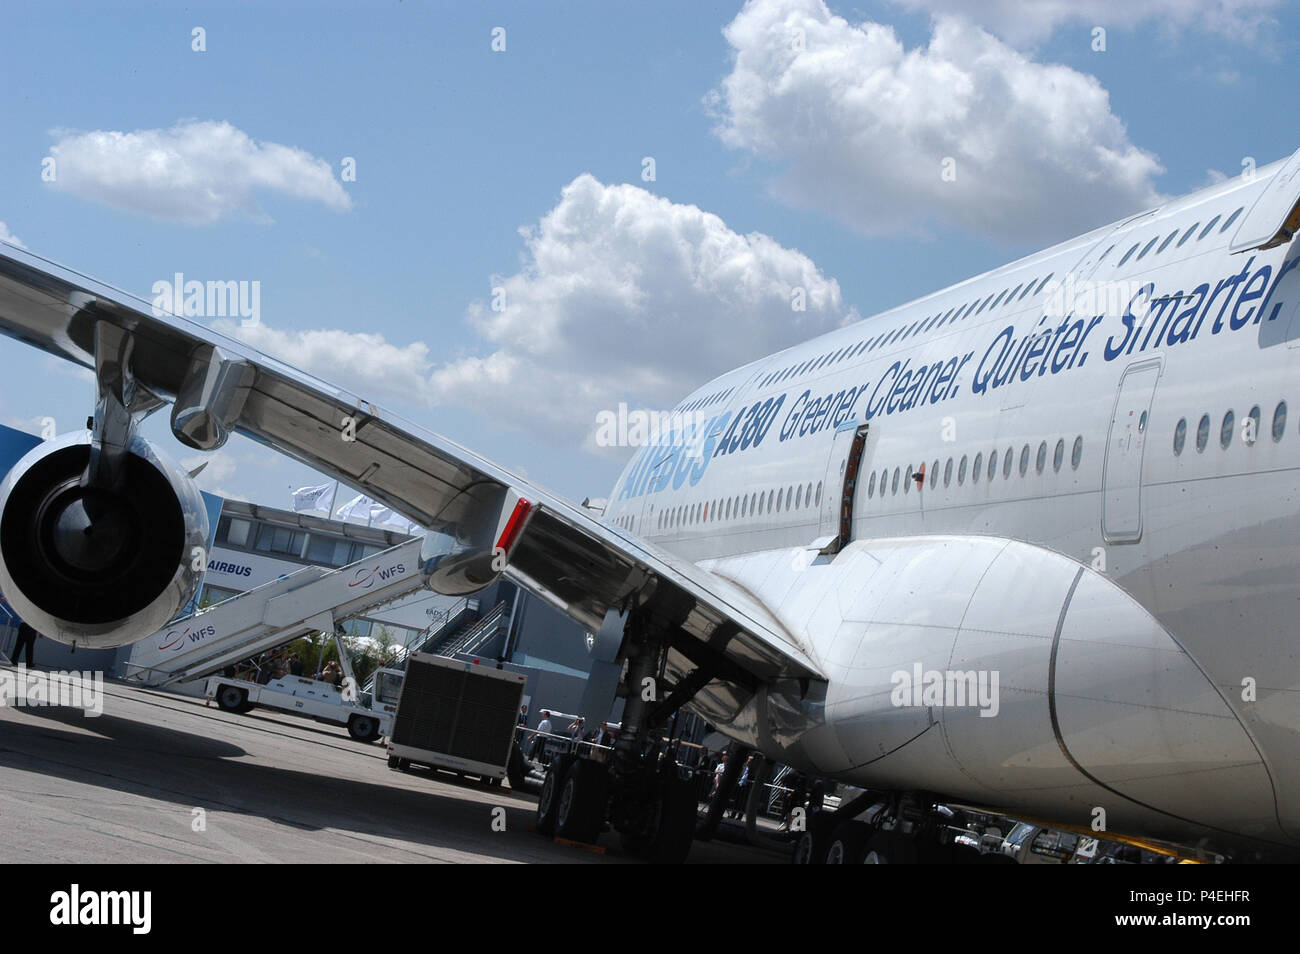 International Air Show de Le Bourget - A380, Airbus, EADS, Dassault, tous les meilleurs plans sur le marché Banque D'Images